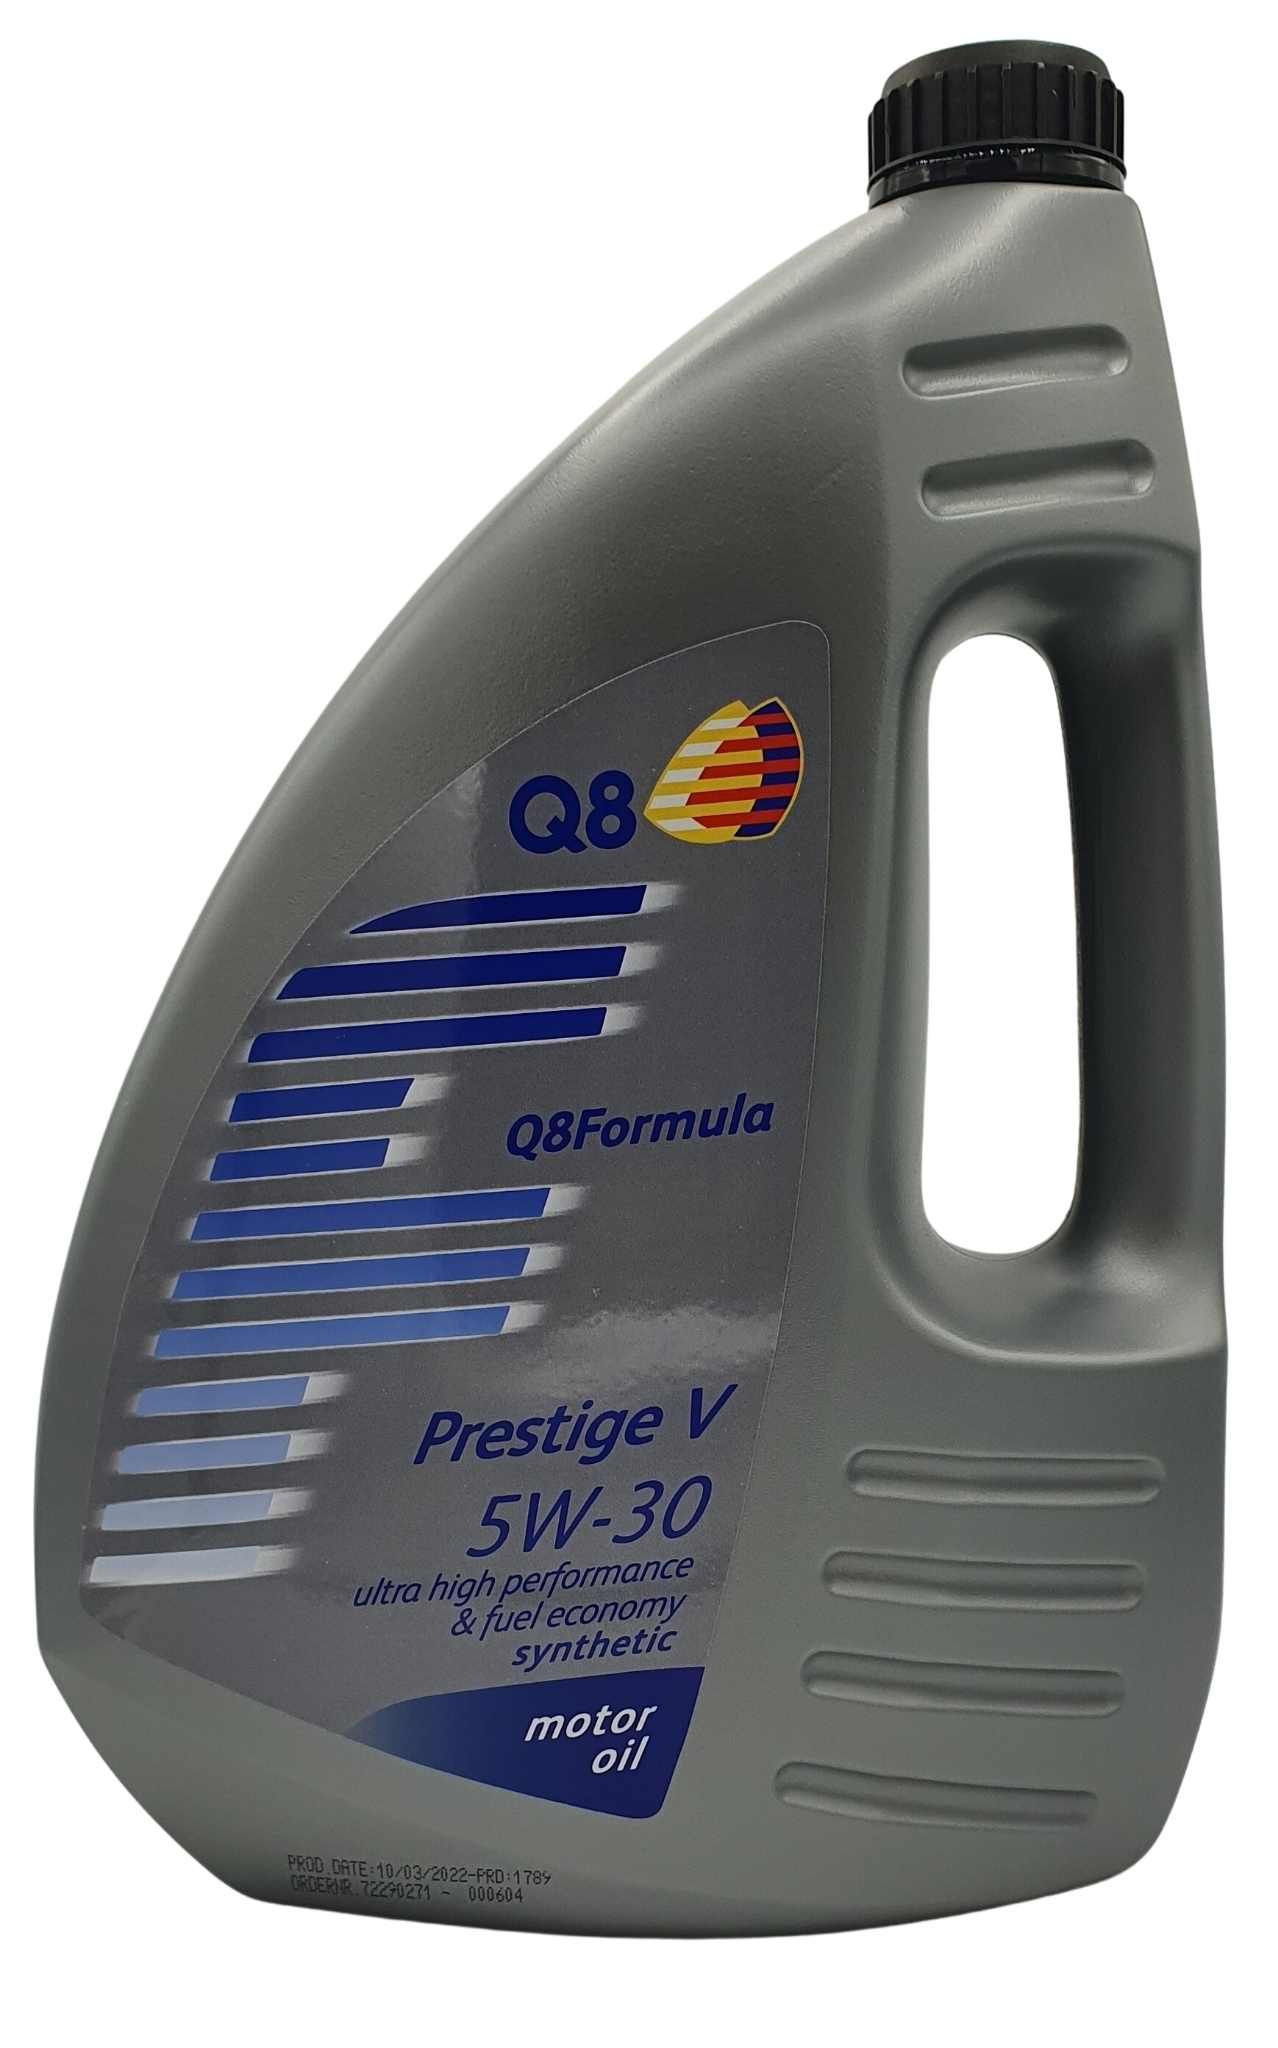 Q8 Formula Prestige V 5W-30 4 Liter